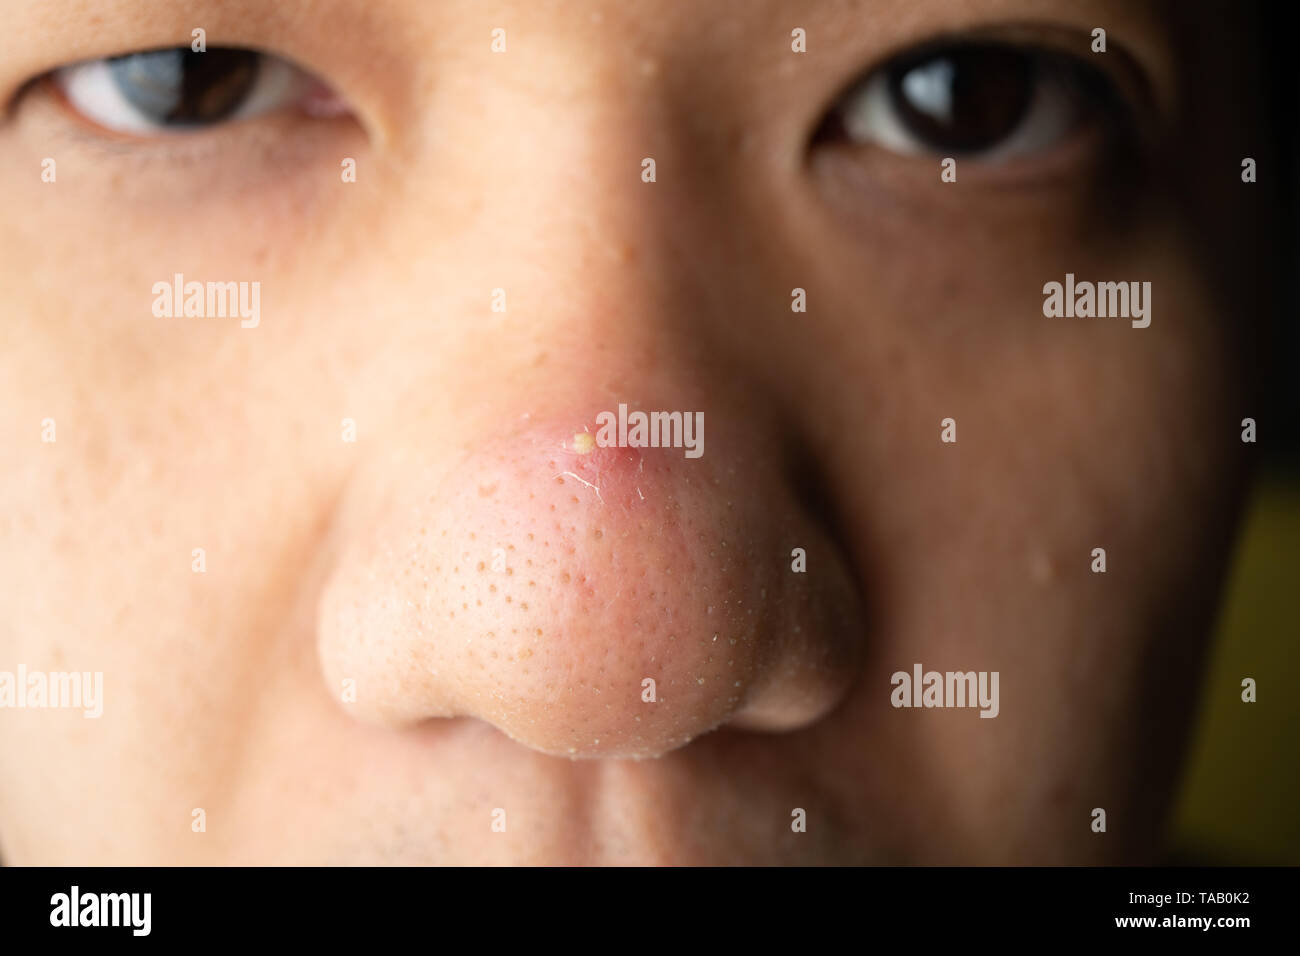 Geschlossen Viele Mitesser Pickel Und Akne Narben Auf Der Nase Eines Asiatischen Haut Gesicht Stockfotografie Alamy